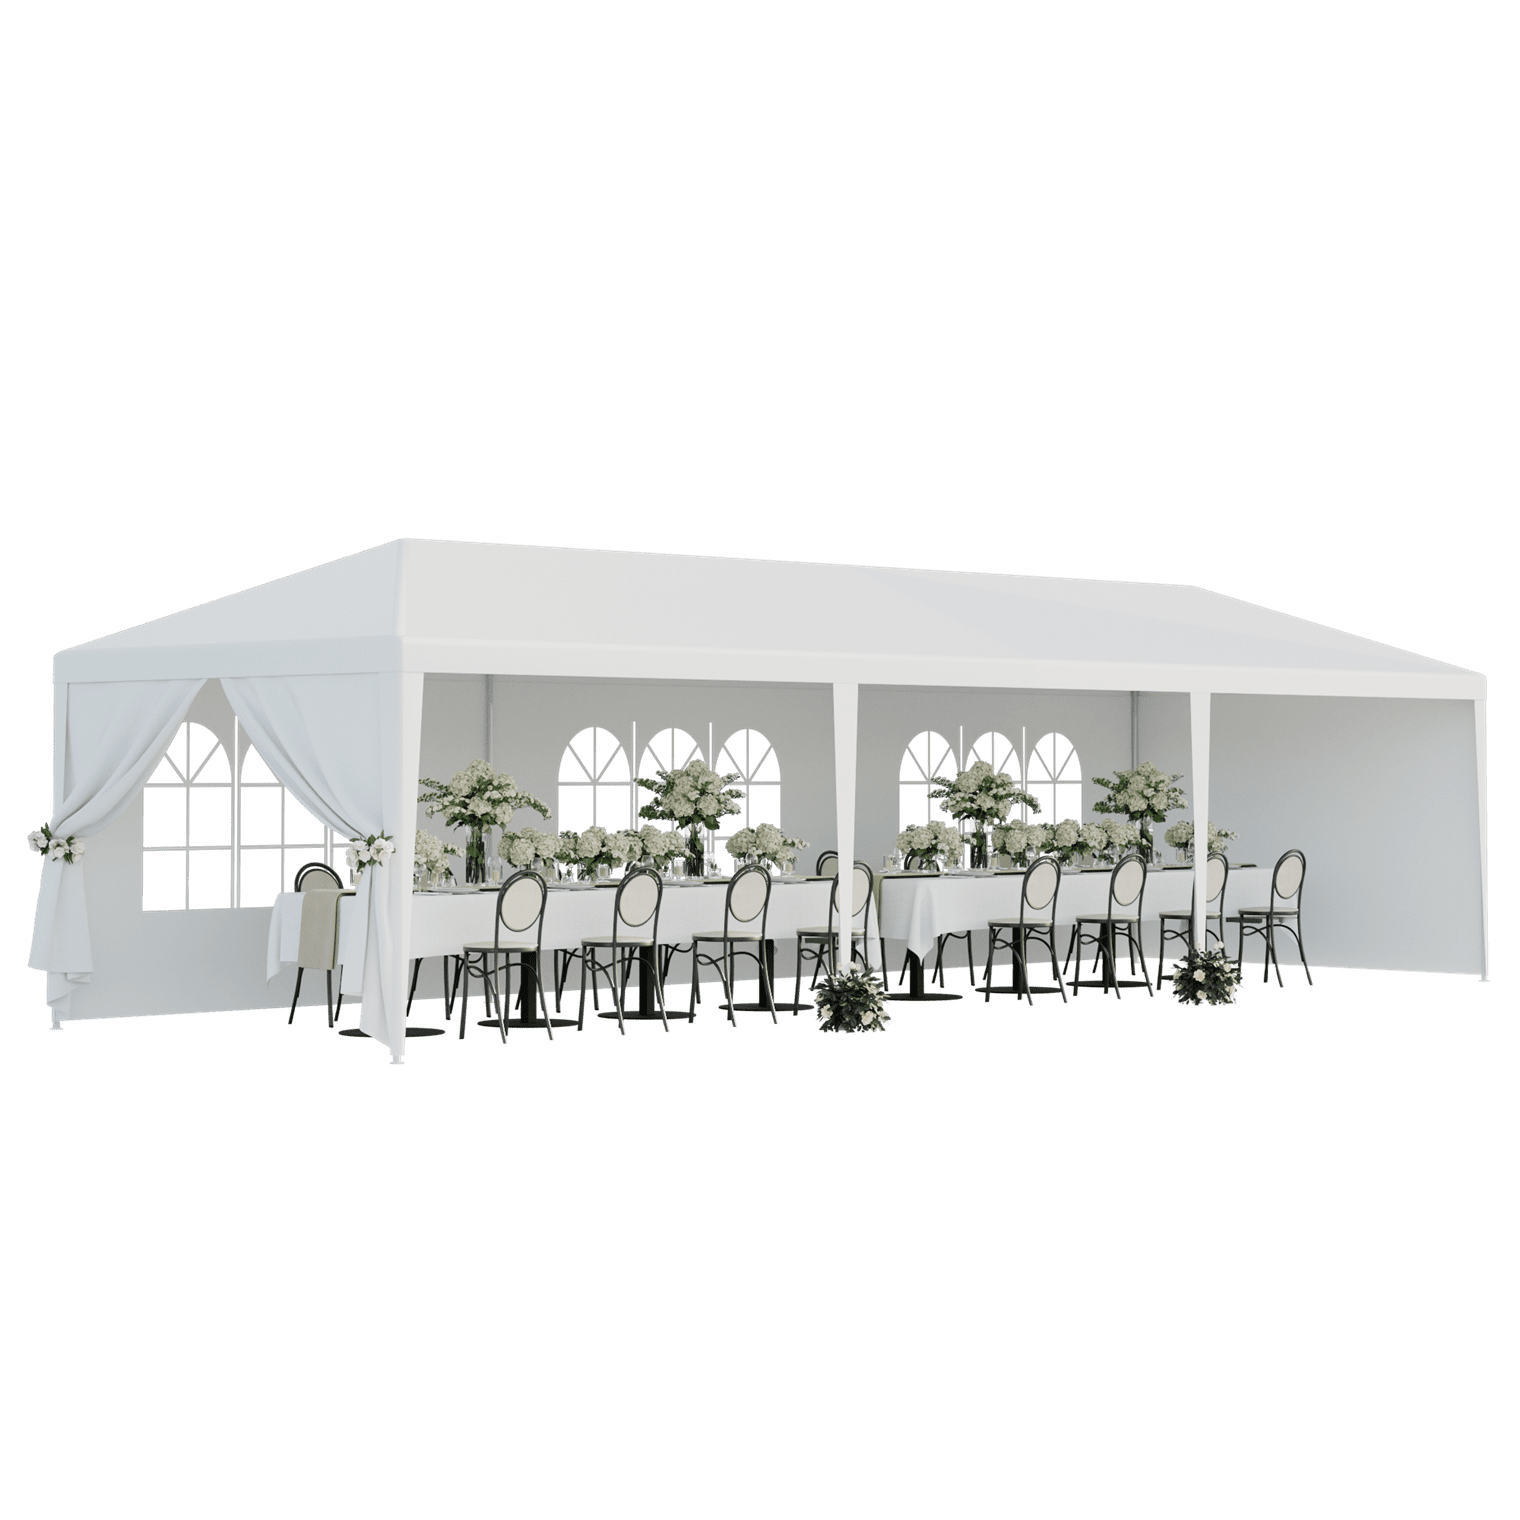 ZENY 10'x 30' White Gazebo Wedding Party Tent with 6 Windows & 2 Sidewalls-8 Walmart.com